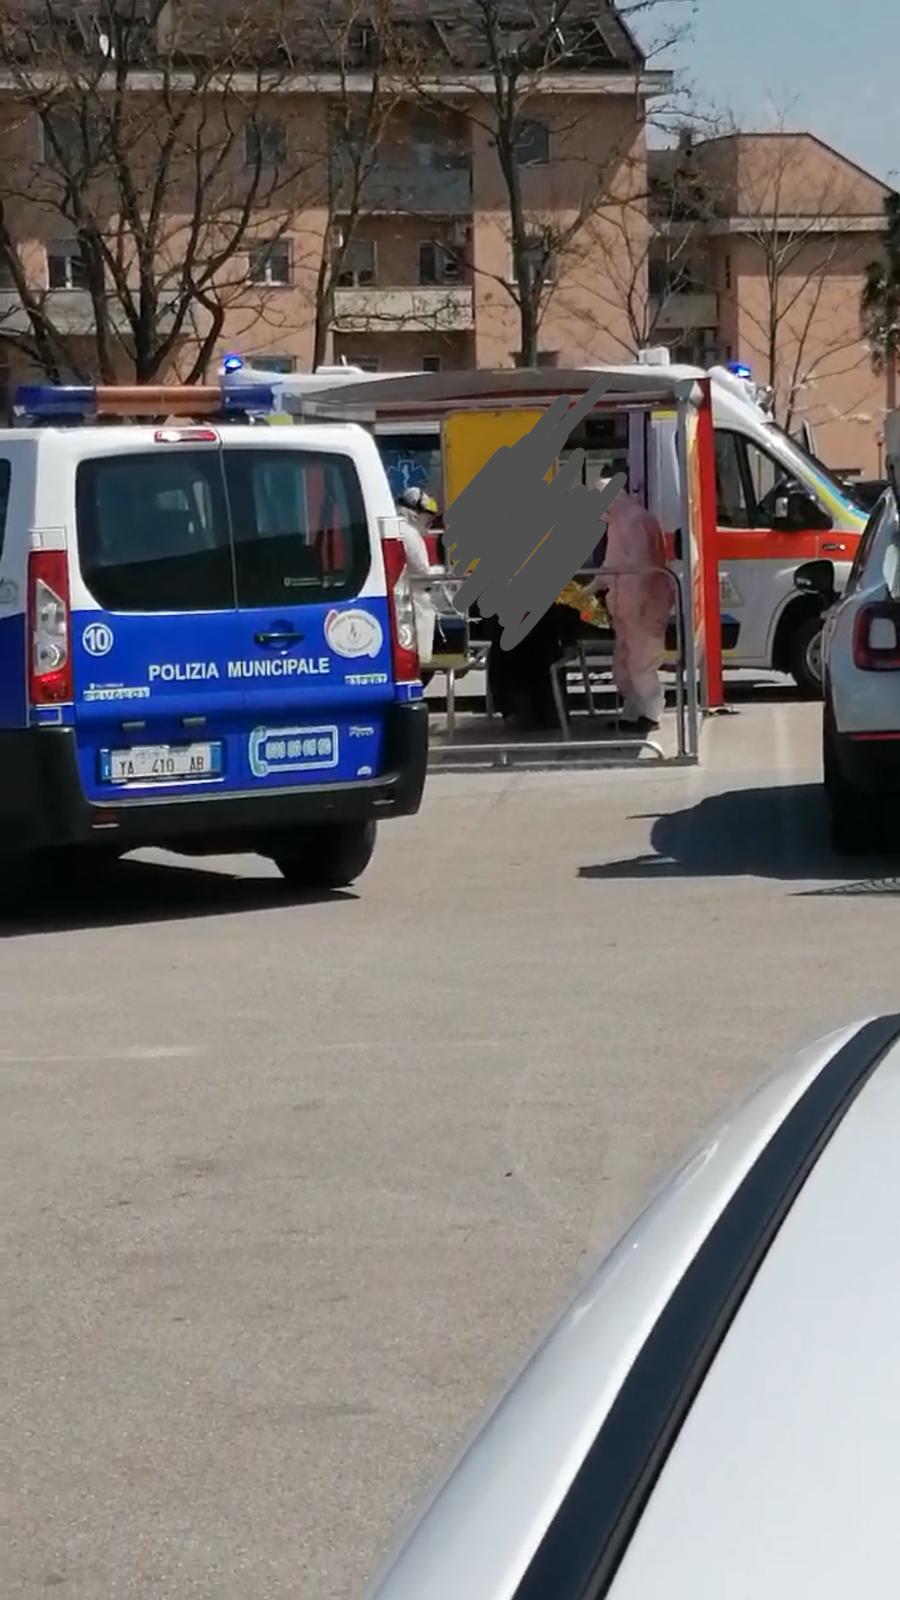 Benevento| Video che ritrae il soccorso in ambulanza , la precisazione della Municipale